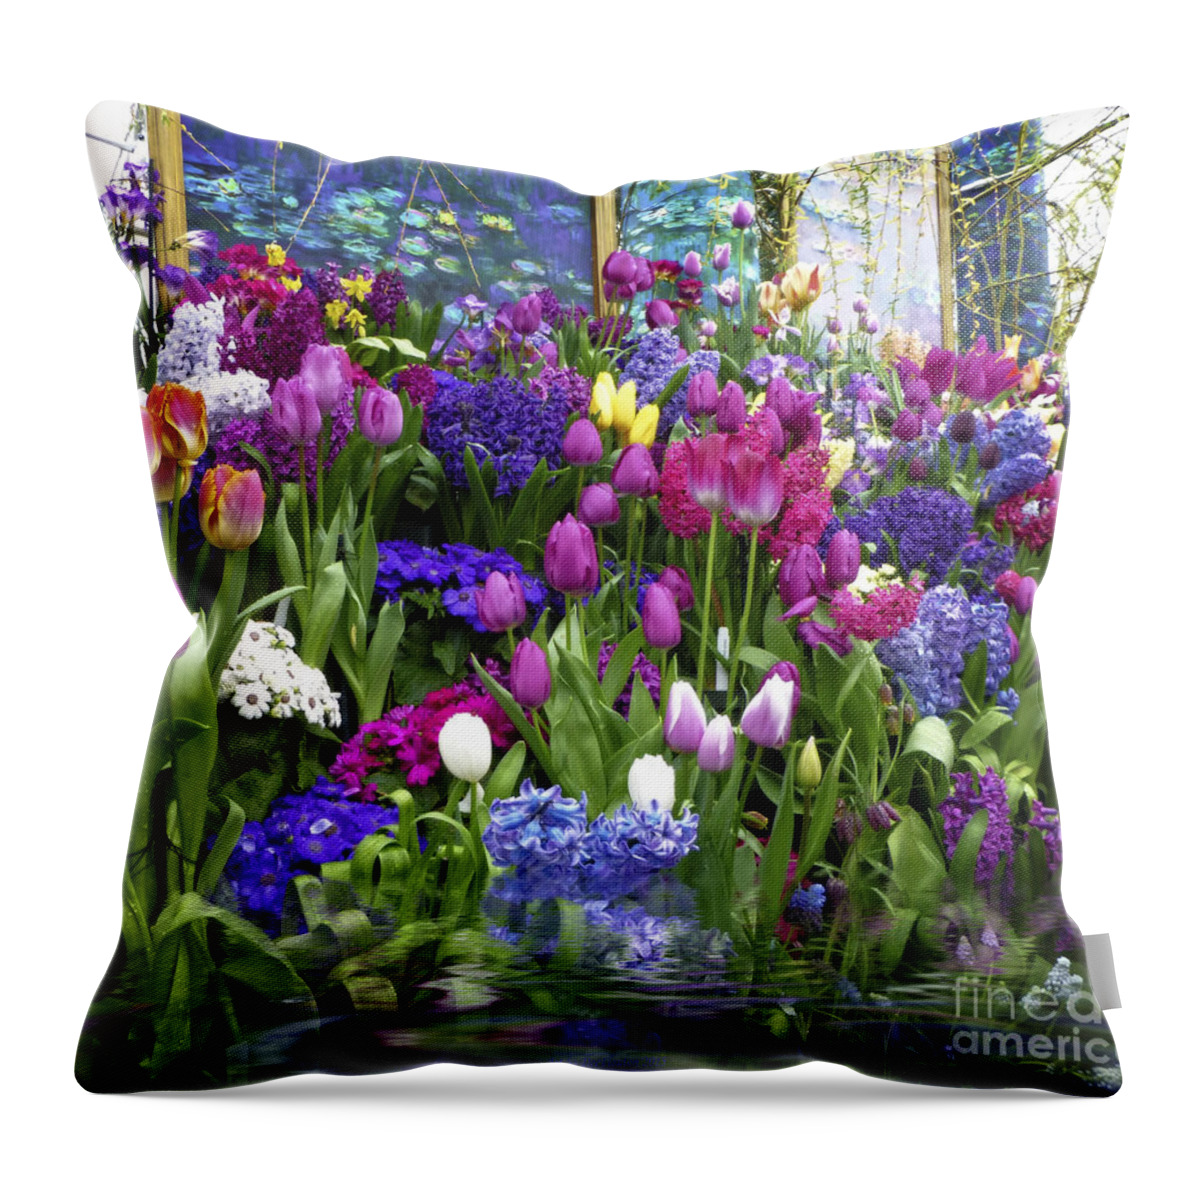 Flower Throw Pillow featuring the photograph Monet Garden Inspiration1 by Dee Flouton